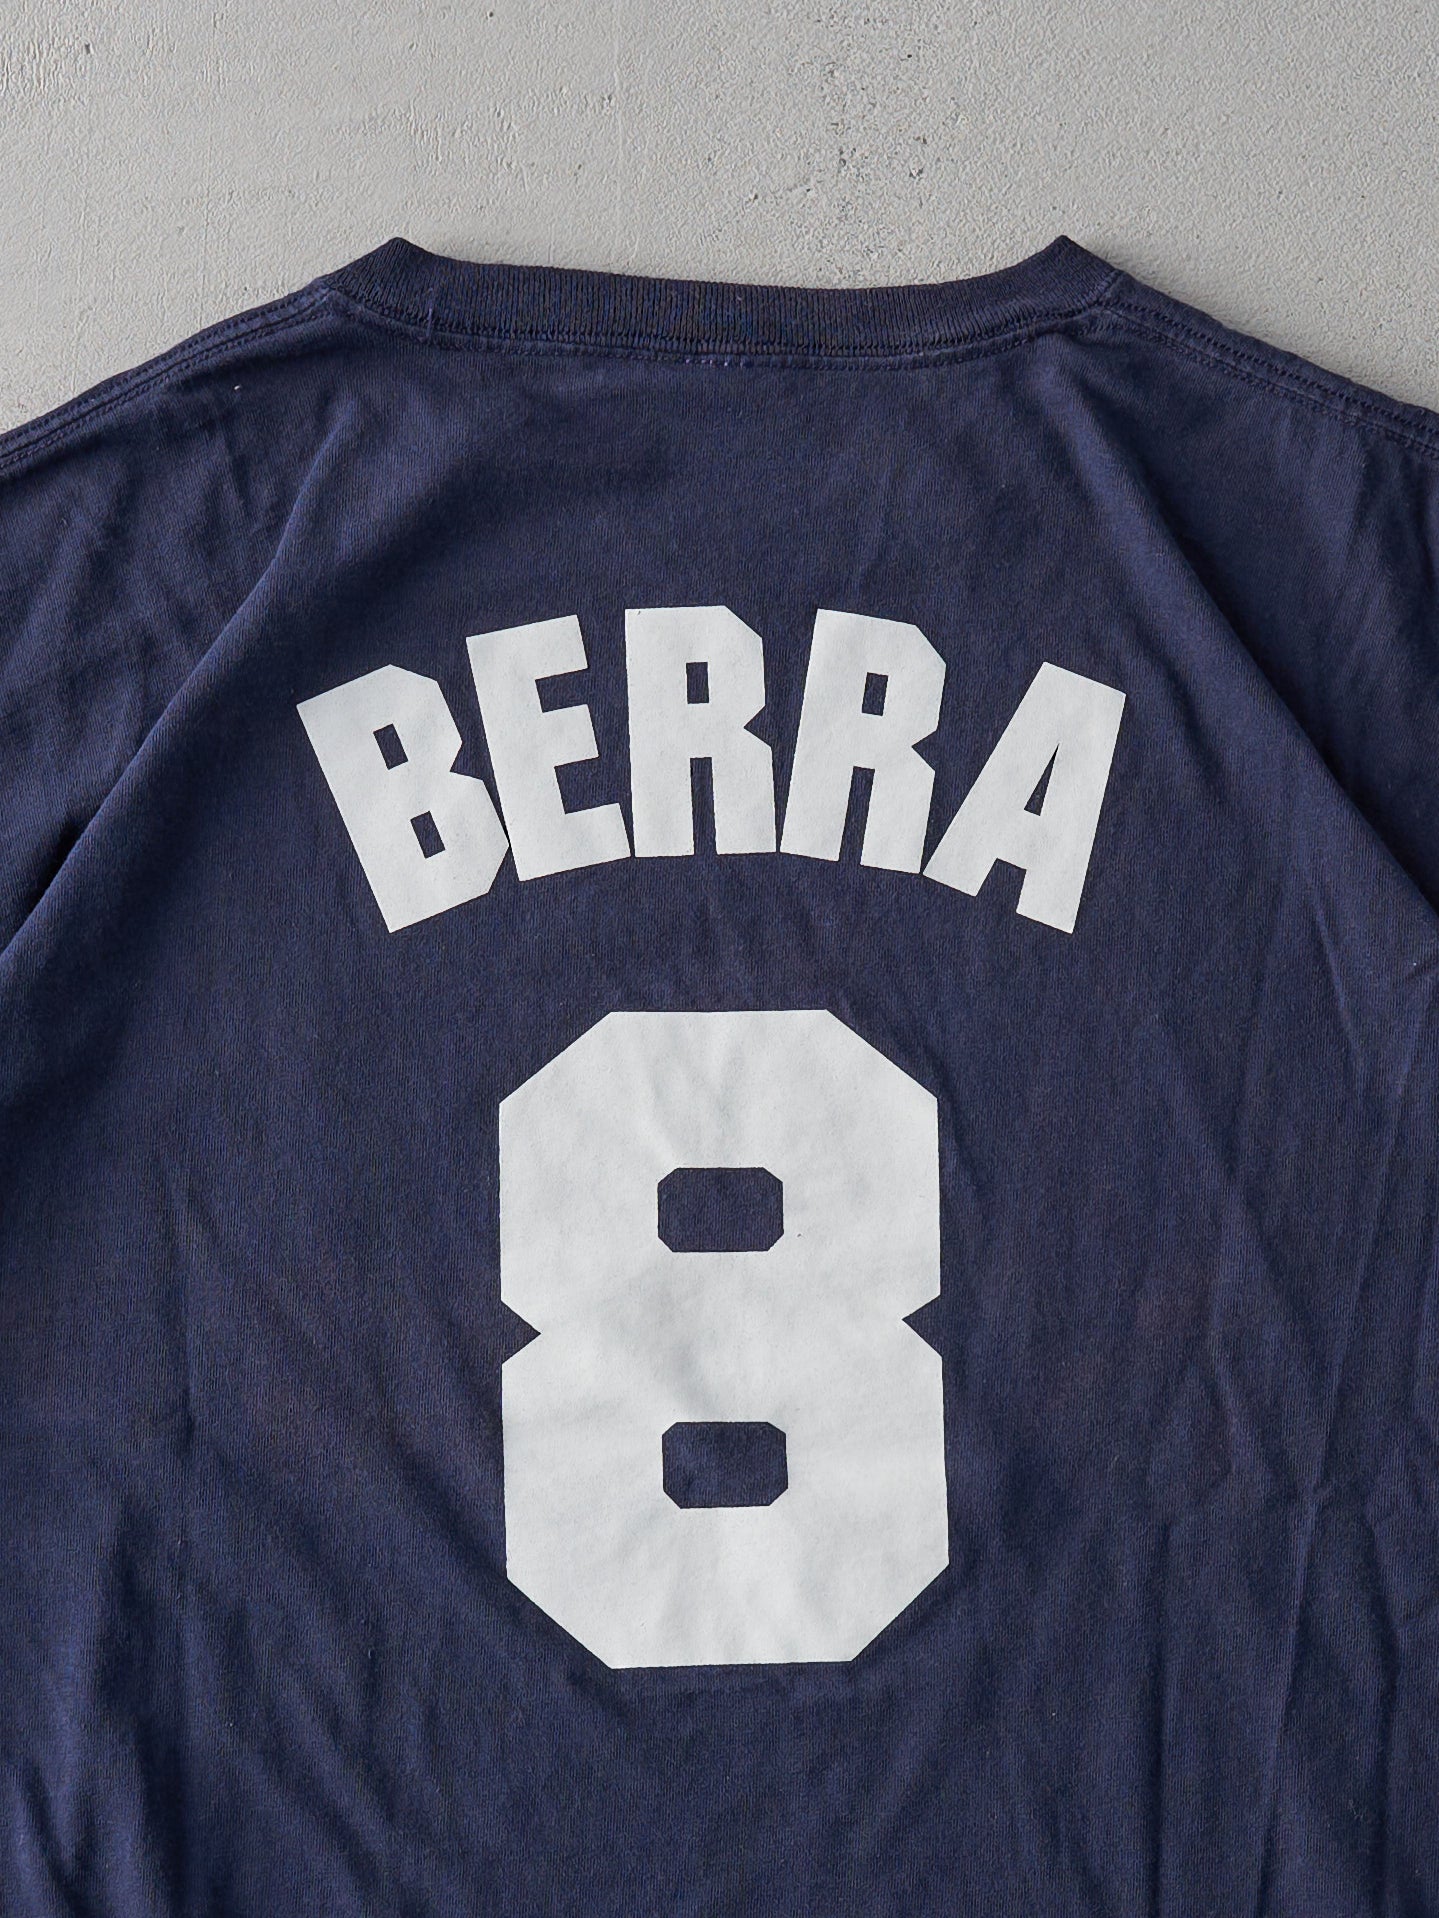 Vintage Y2K Navy New York Yankees Yogi Berra Player Tee (L)